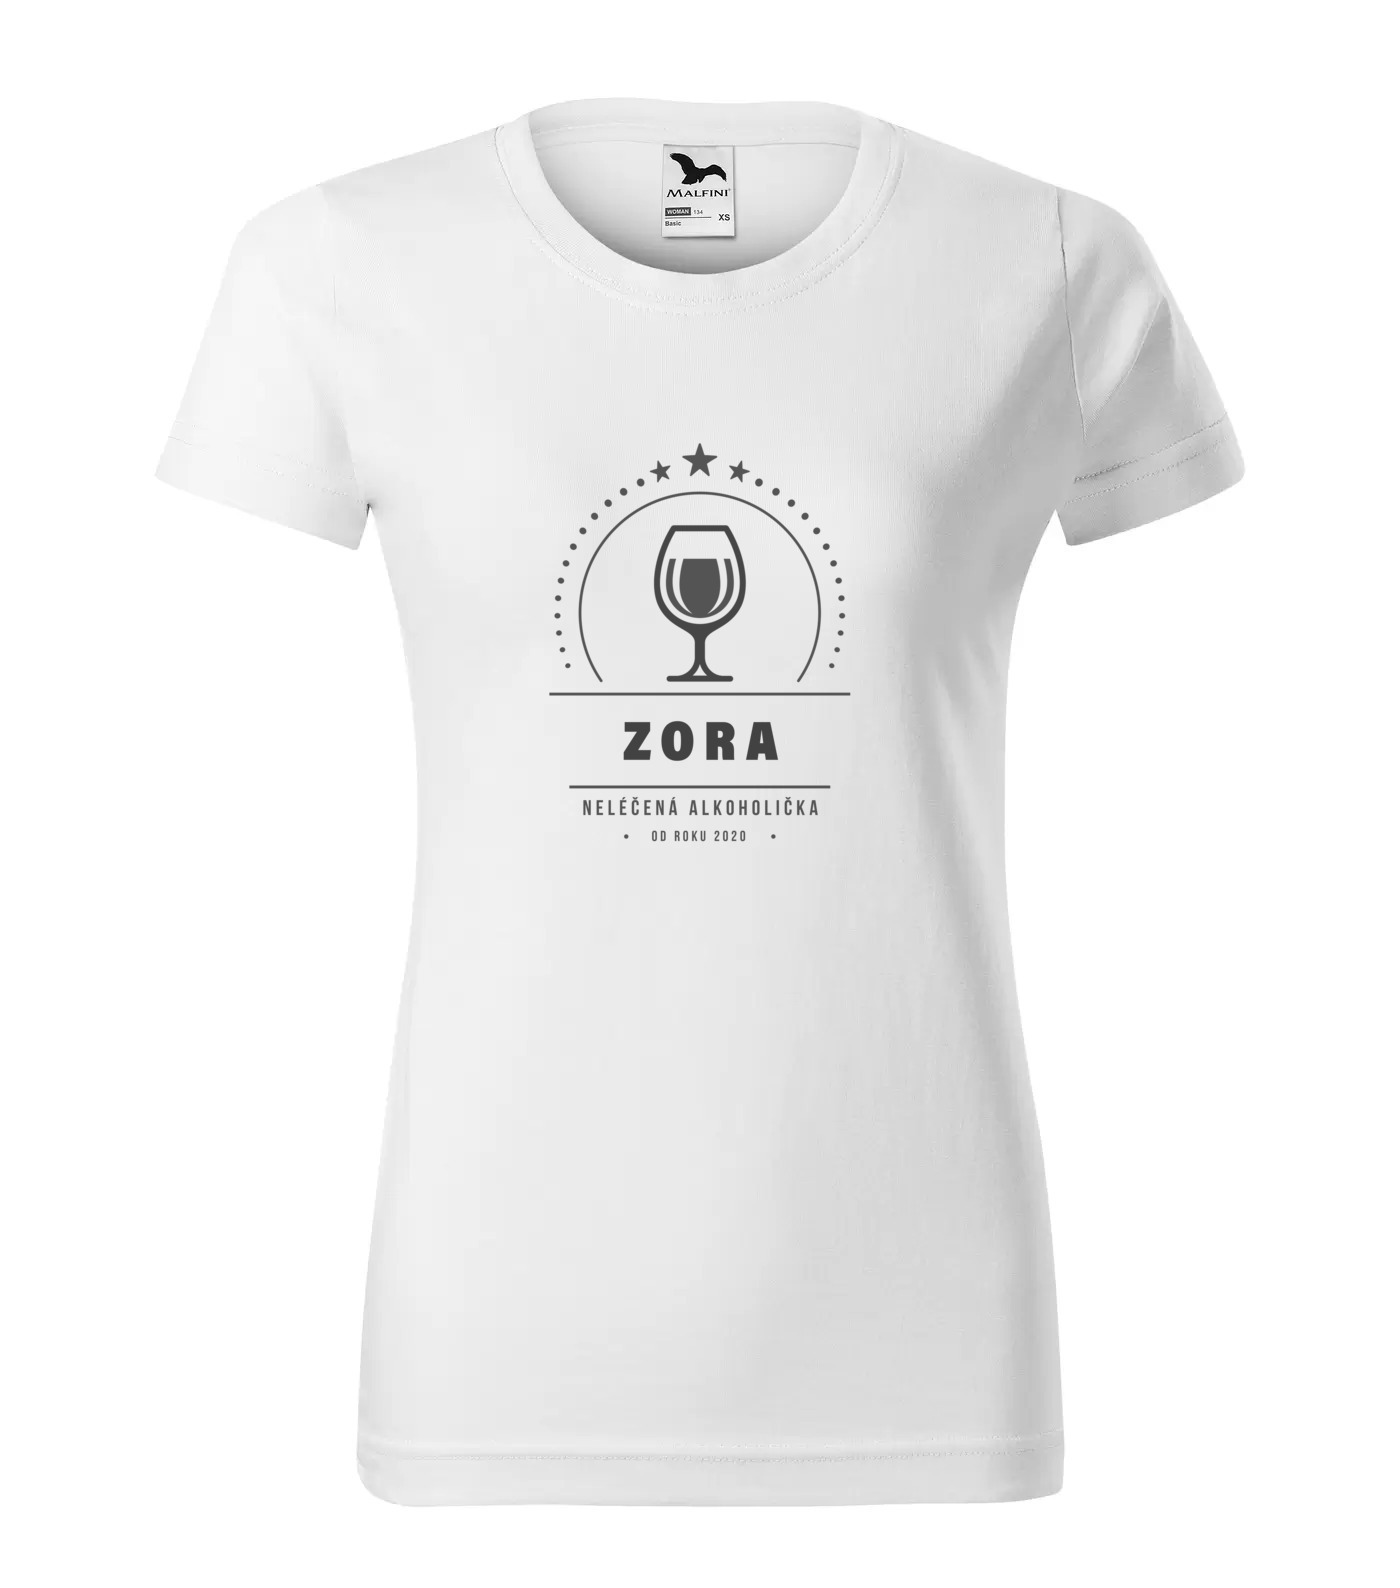 Tričko Alkoholička Zora